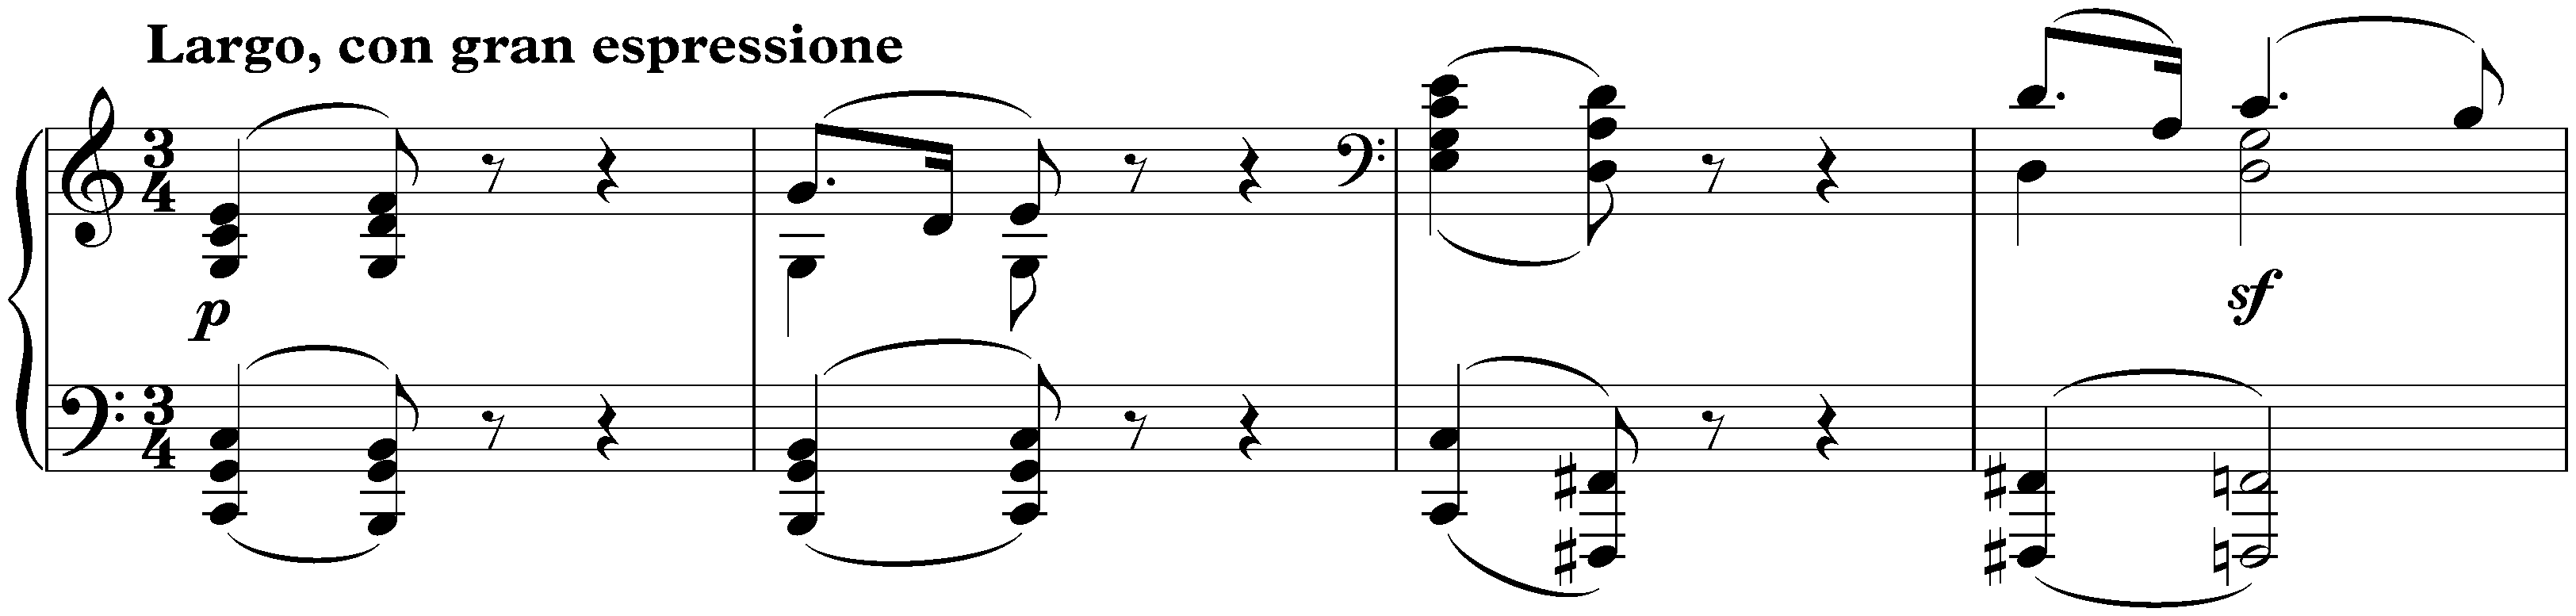 Sonata no. 4 in E-flat major, op. 7; 2. Largo, con gran espressione